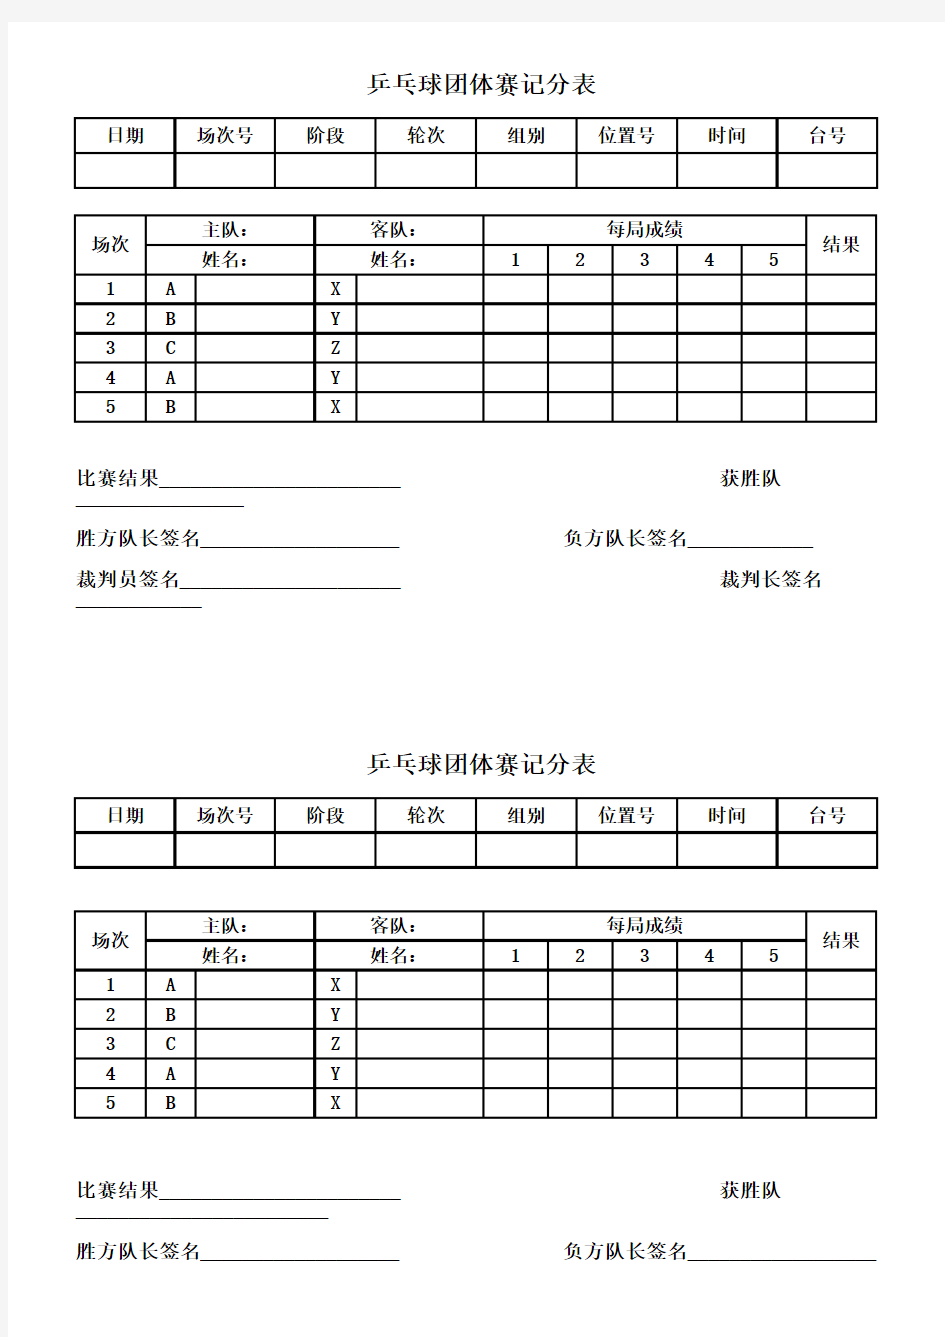 乒乓球团体赛记分表